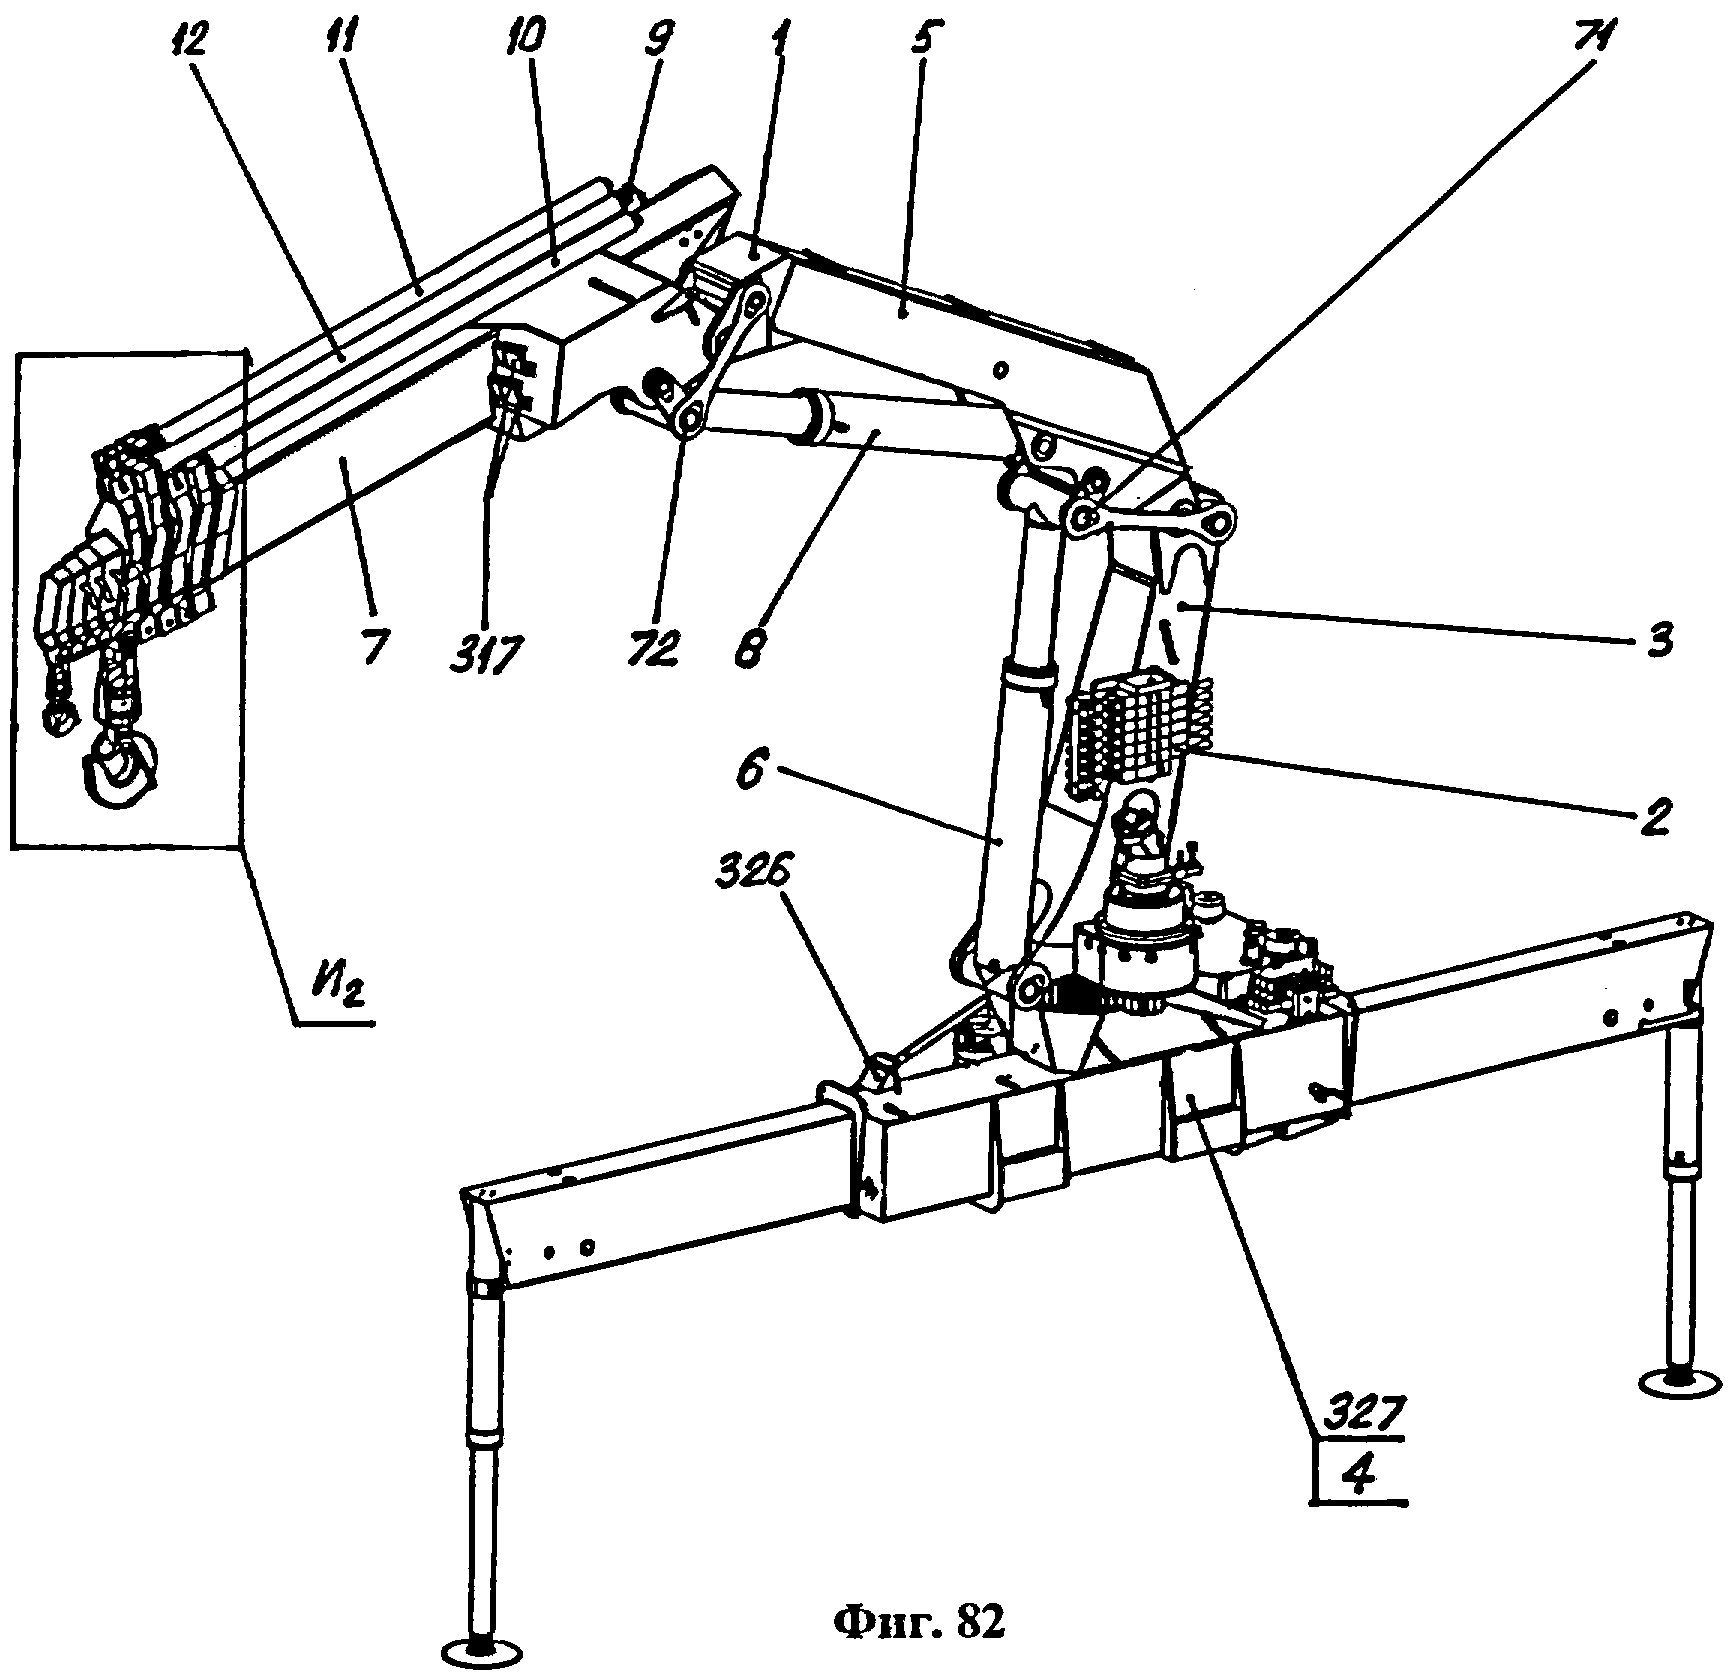 Как разобрать стрелу крана-манипулятора unic 330v: механизм конструкции телескопической стрелы